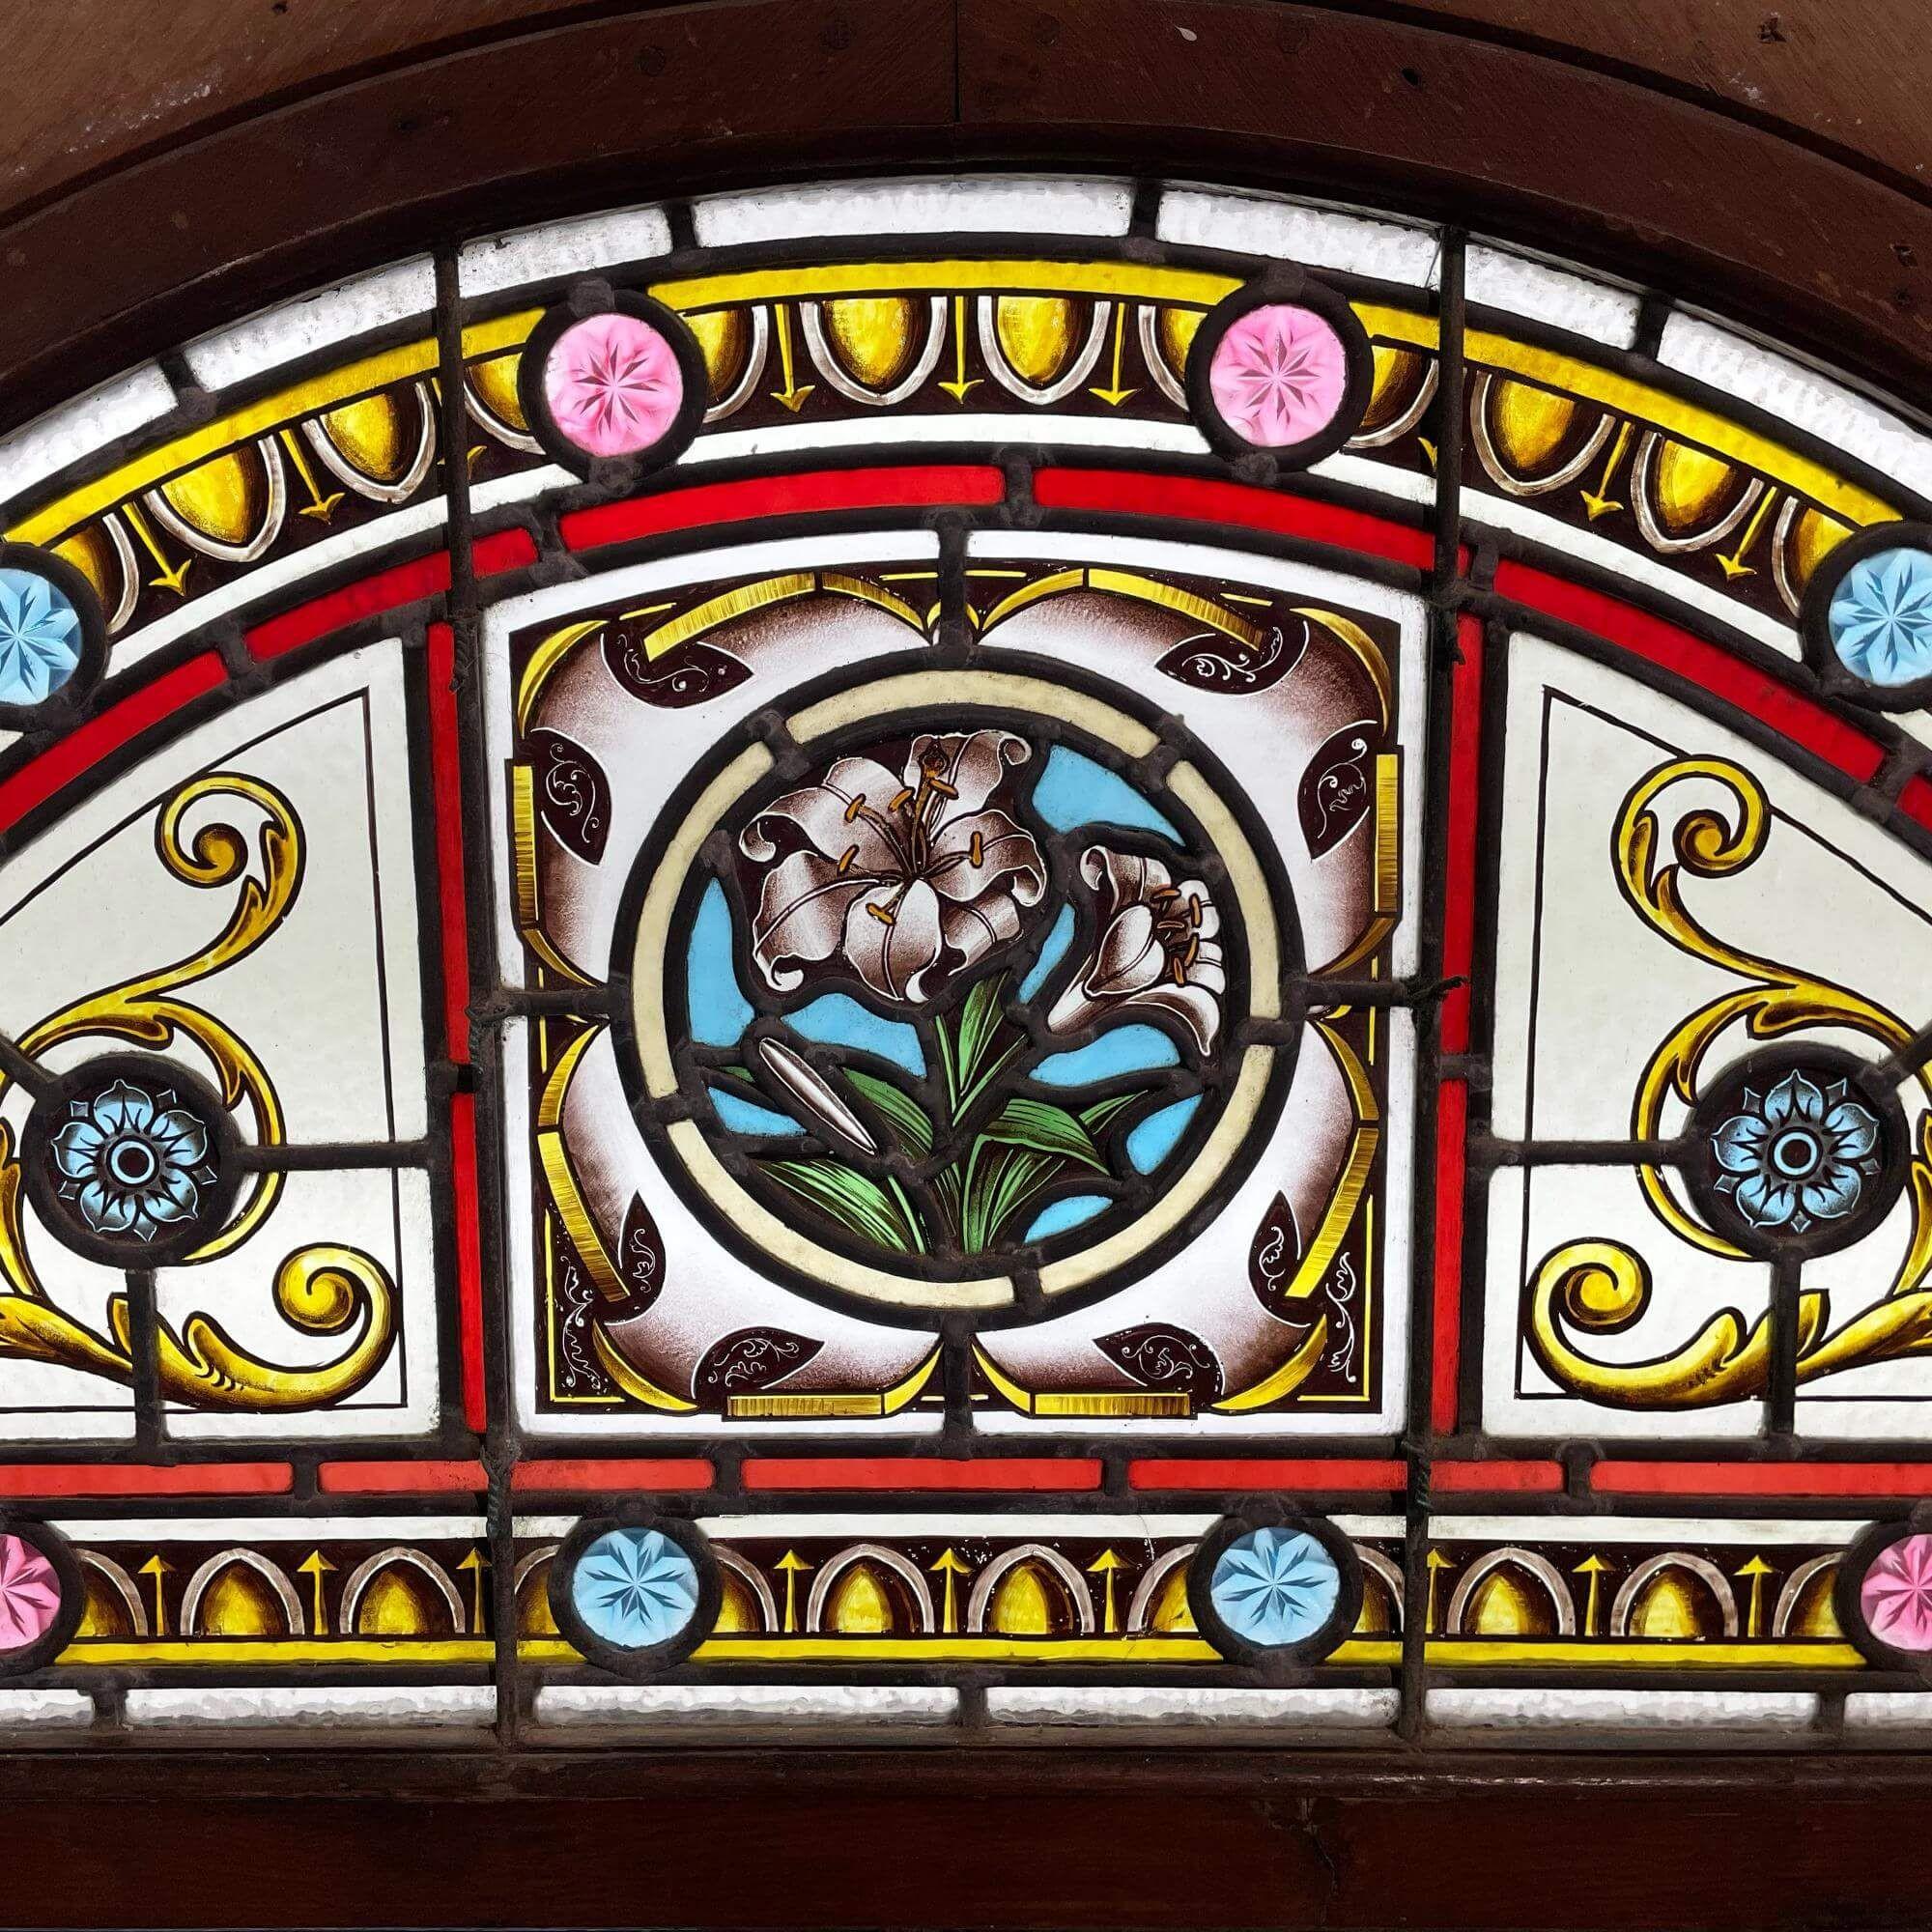 Ein wunderbar lebendiges, antikes englisches Glasfenster, das aus einem Hotel in Newquay, Großbritannien, stammt. Obwohl es aus dem späten 19. Jahrhundert stammt, ist dieses viktorianische Oberlicht ein beeindruckendes Element über einer Veranda